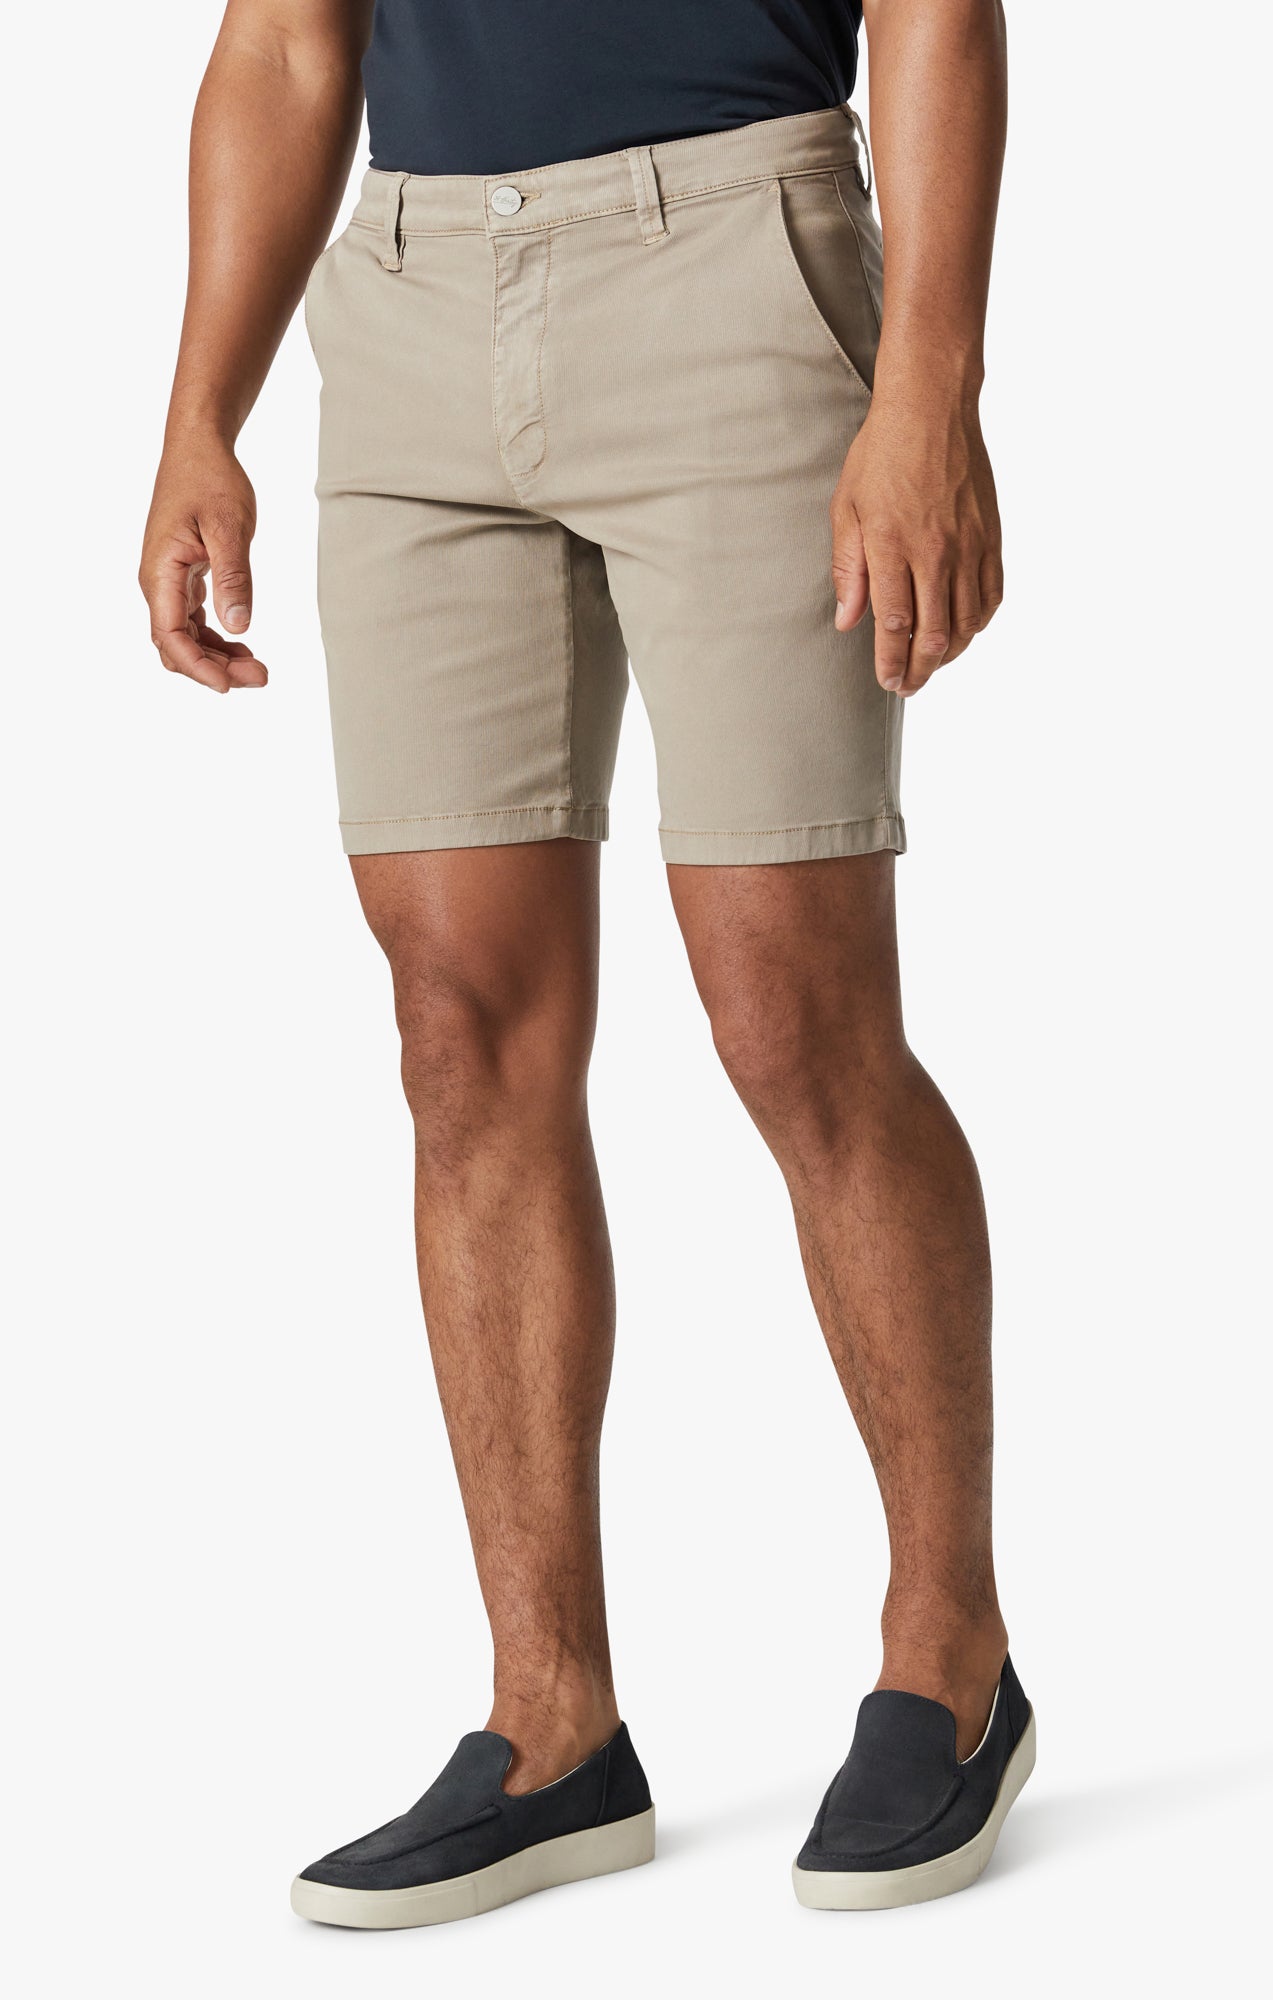 Arizona Shorts In Aluminum Soft Touch Image 3